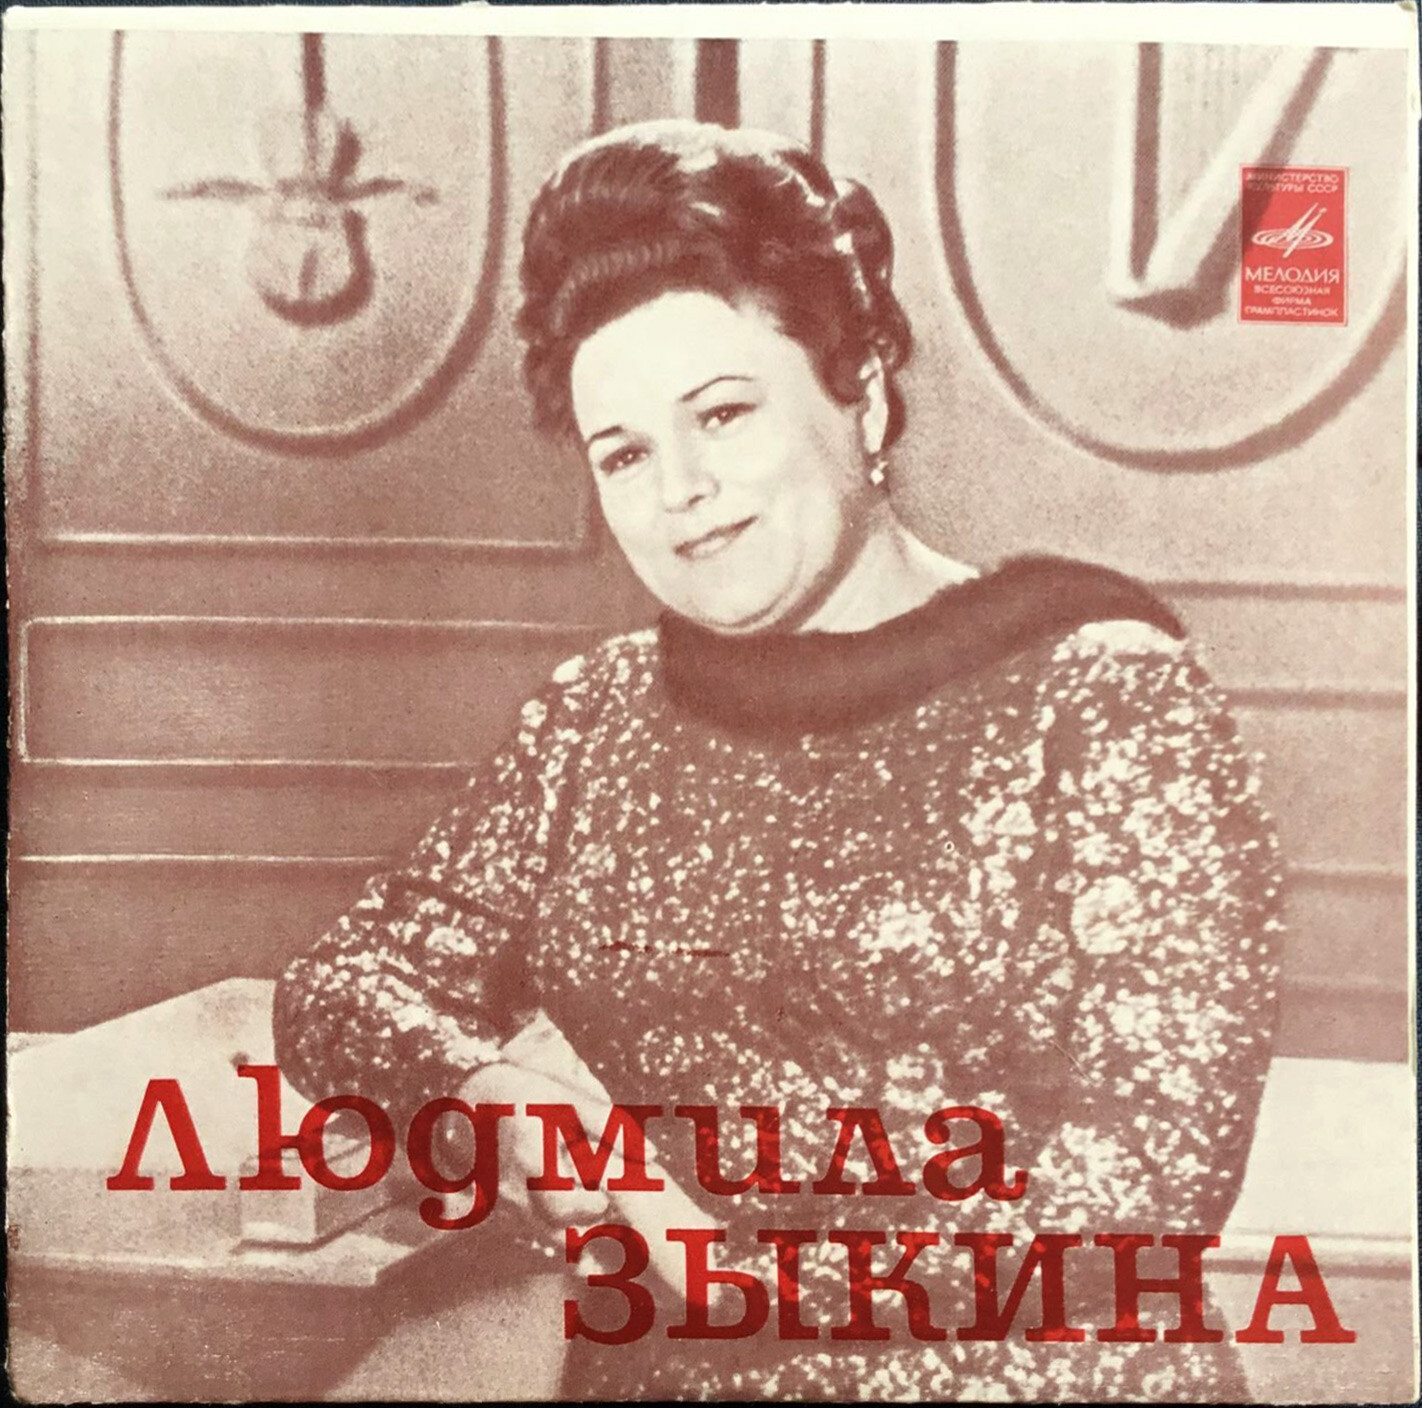 Людмила Зыкина поёт русские народные песни